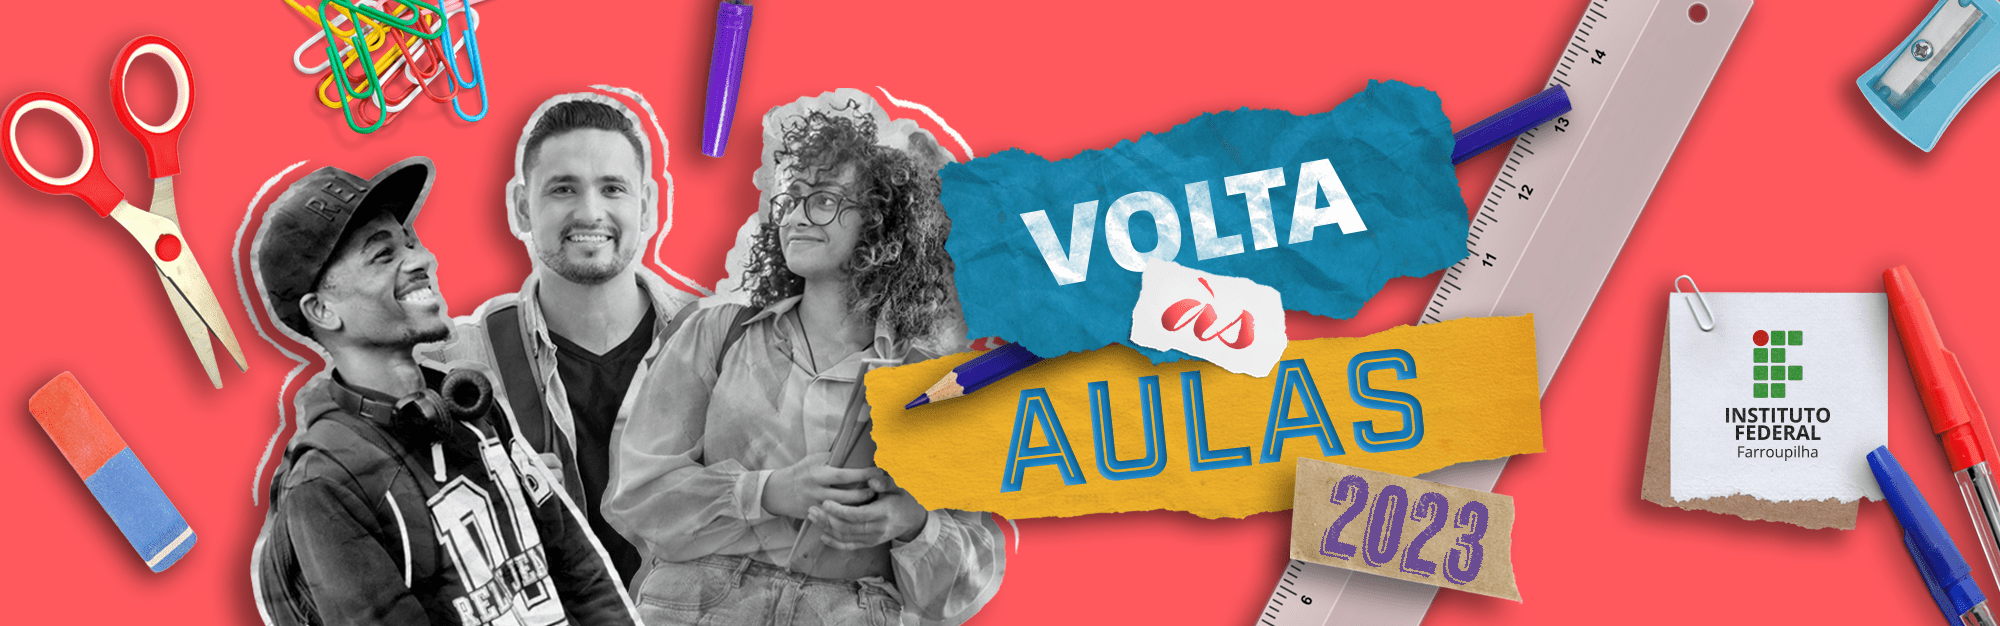 Volta 2023